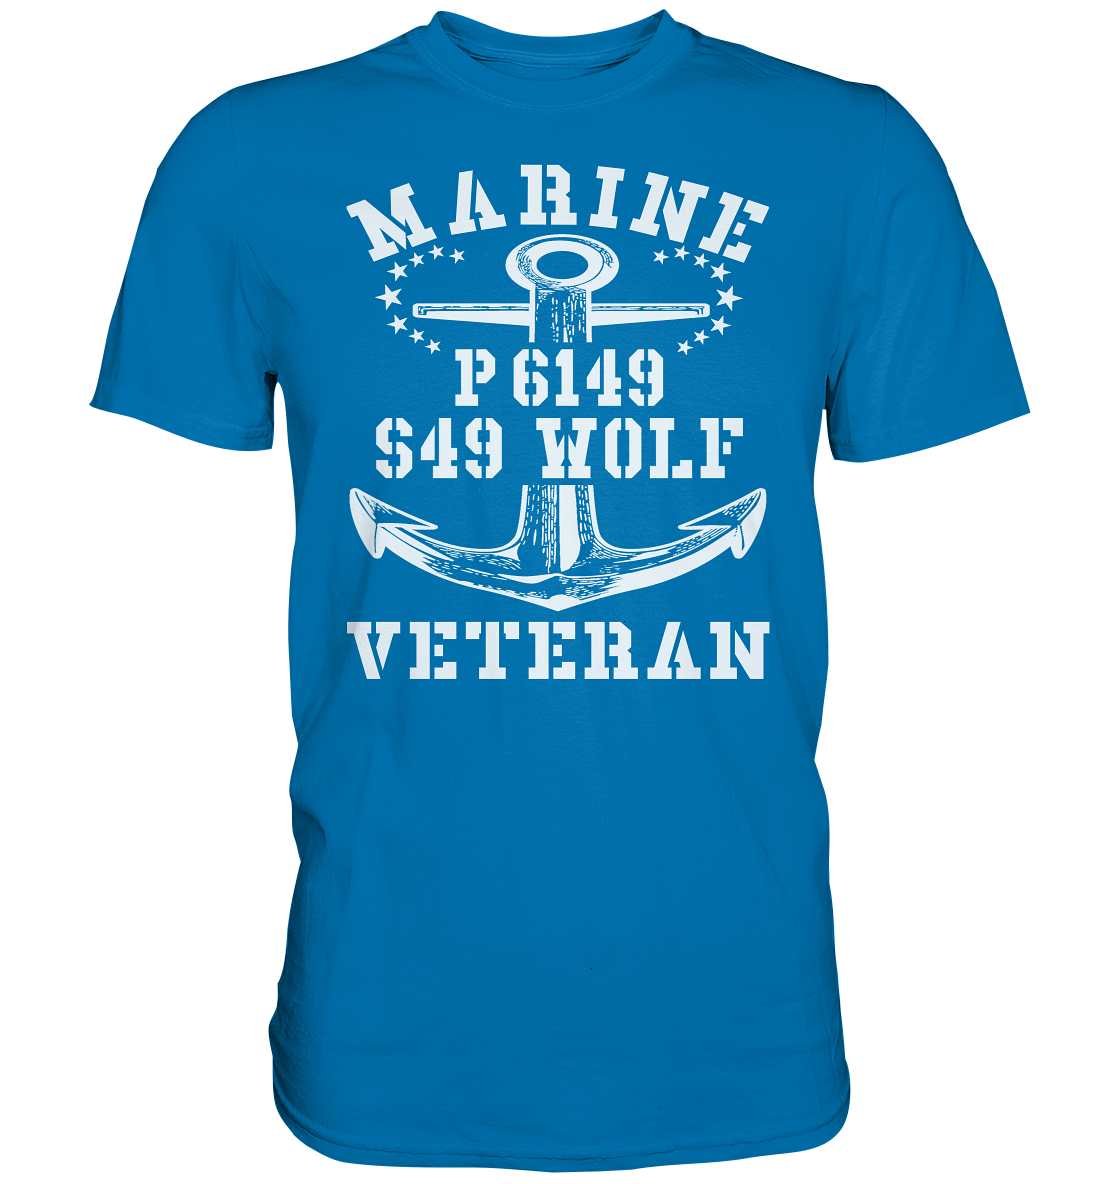 P6149 S49 WOLF Marine Veteran - Premium Shirt